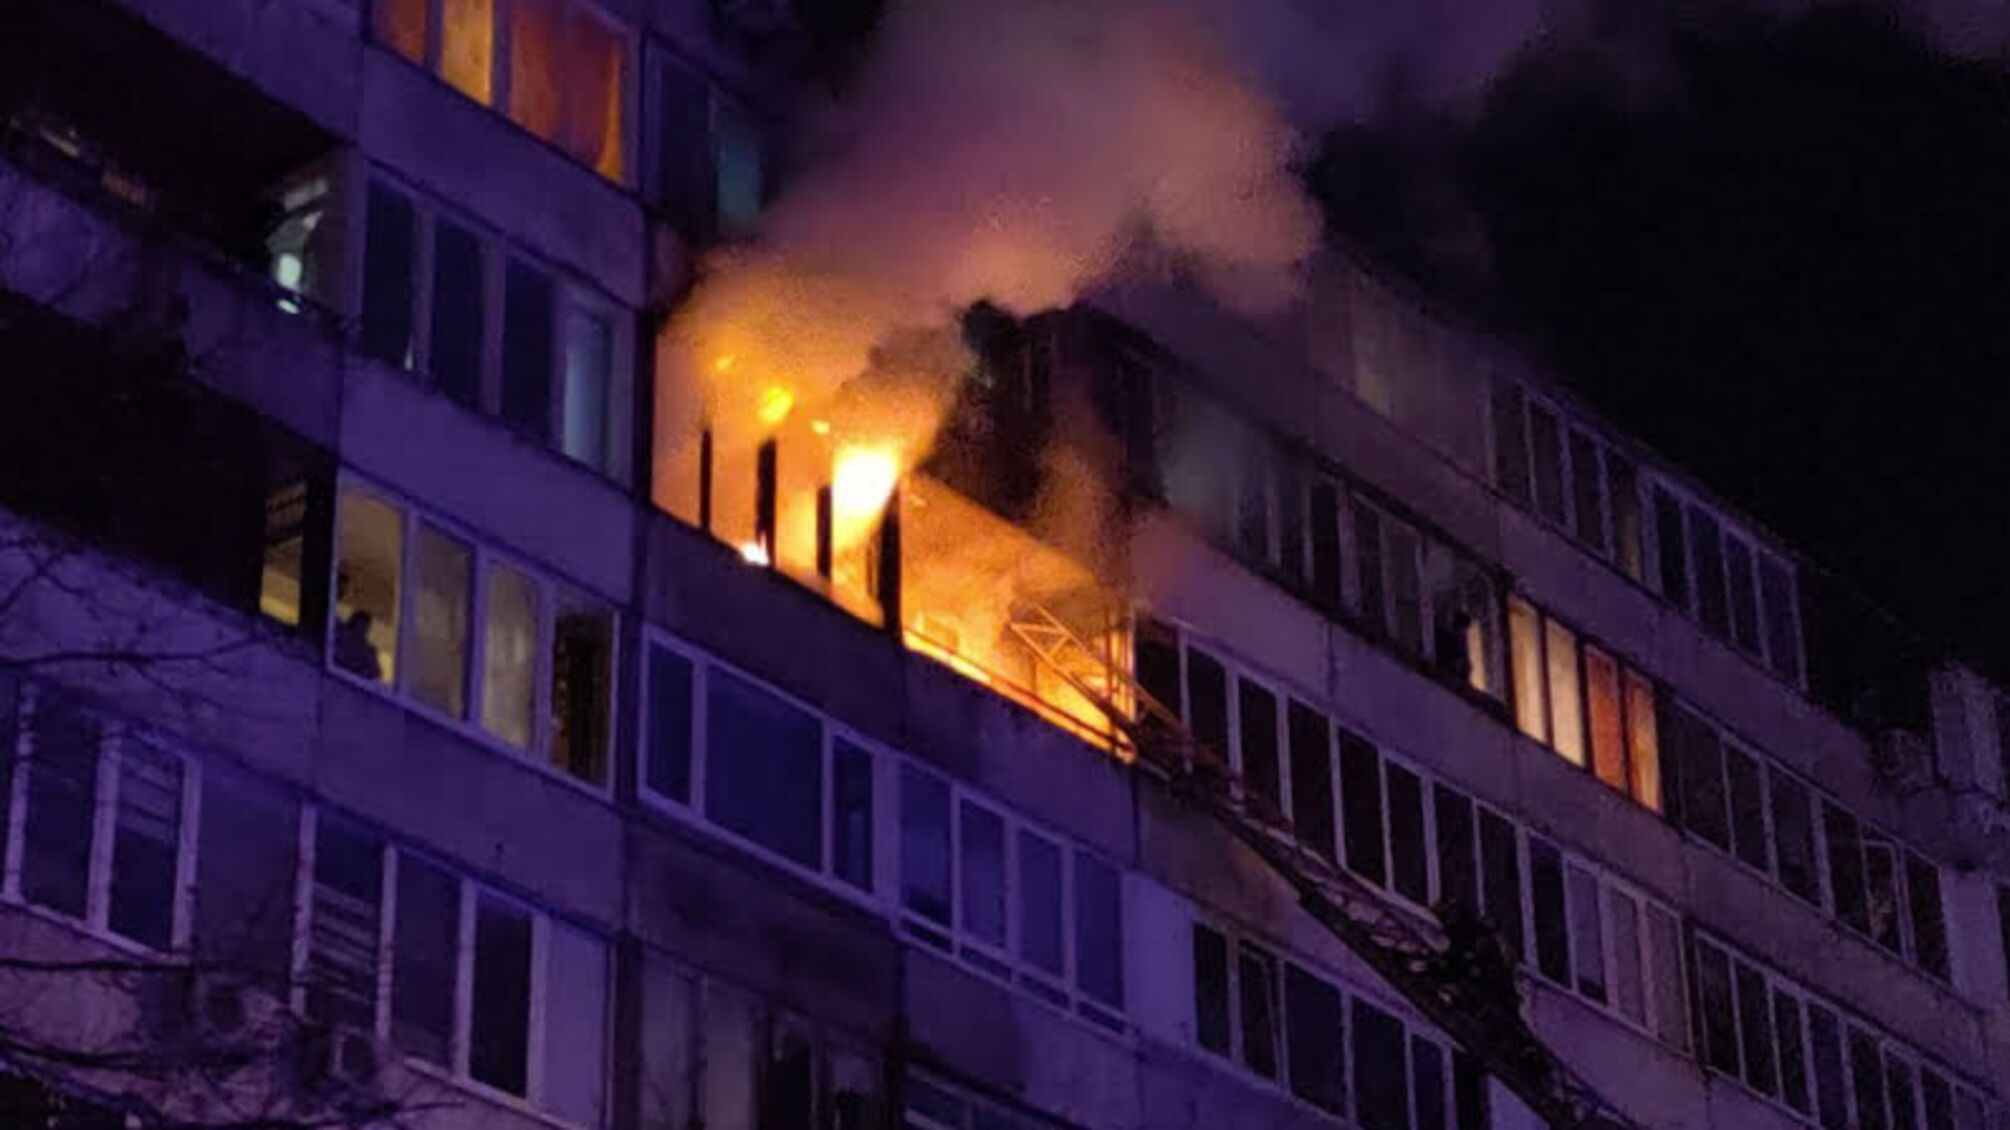 м. Київ: під час гасіння пожежі в житловому будинку вогнеборці врятували жінку, евакуювали 10 осіб, з них 1 дитину